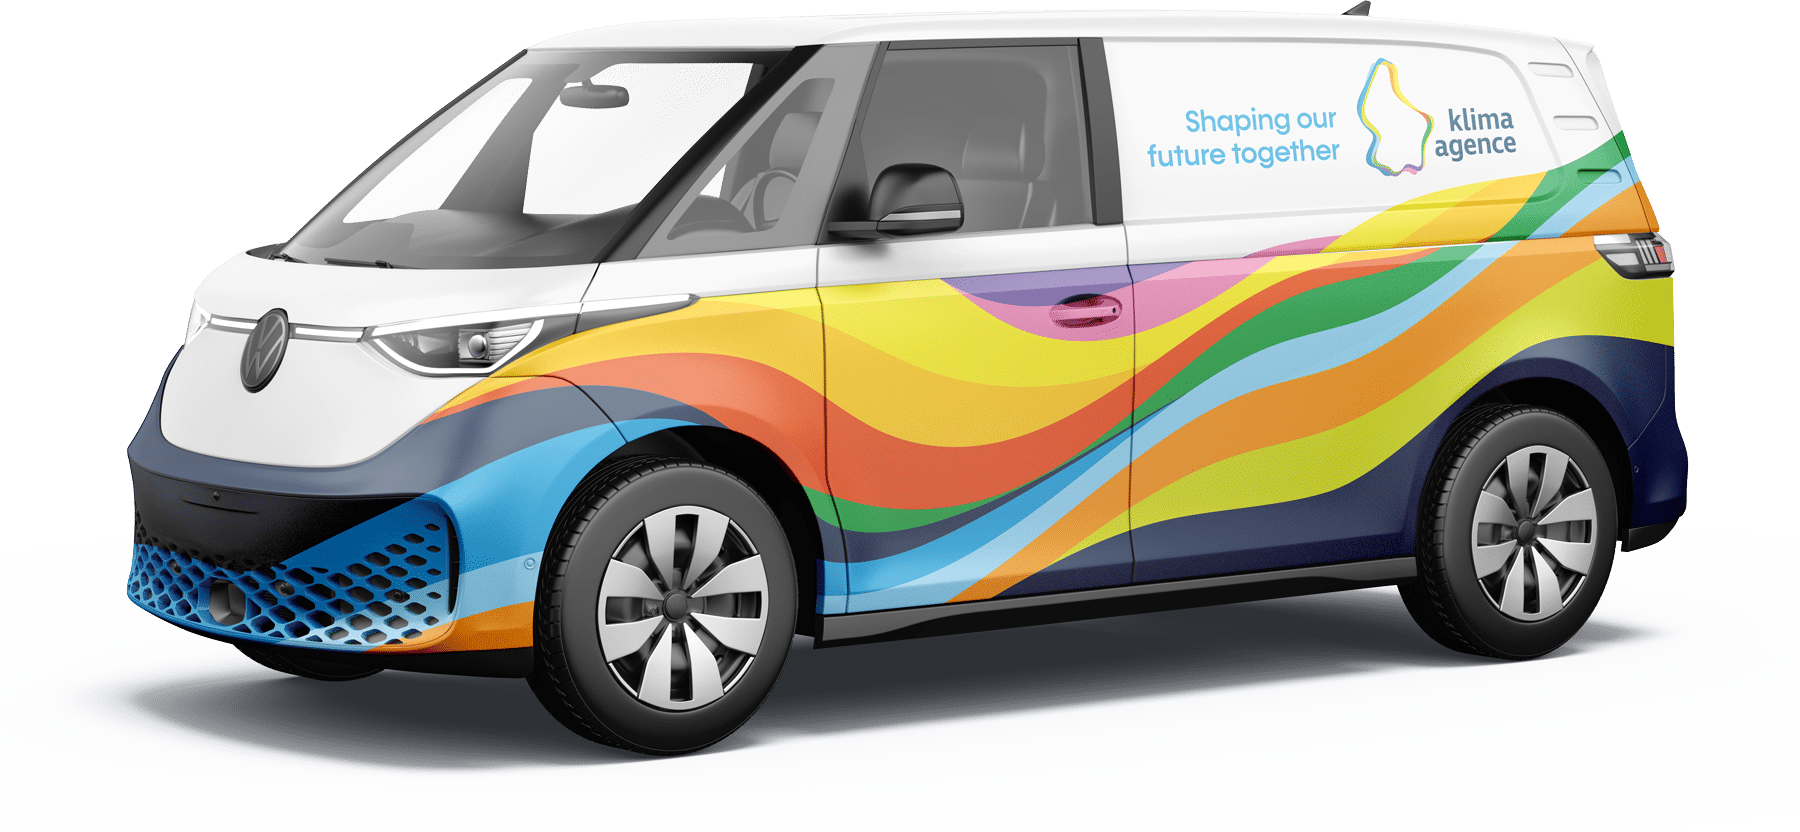 Fourgonnette électrique Volkswagen de Klima-Agence avec un design coloré représentant des vagues dans des tons de bleu, orange, vert, jaune et rouge. Le logo de Klima-Agence et le slogan 